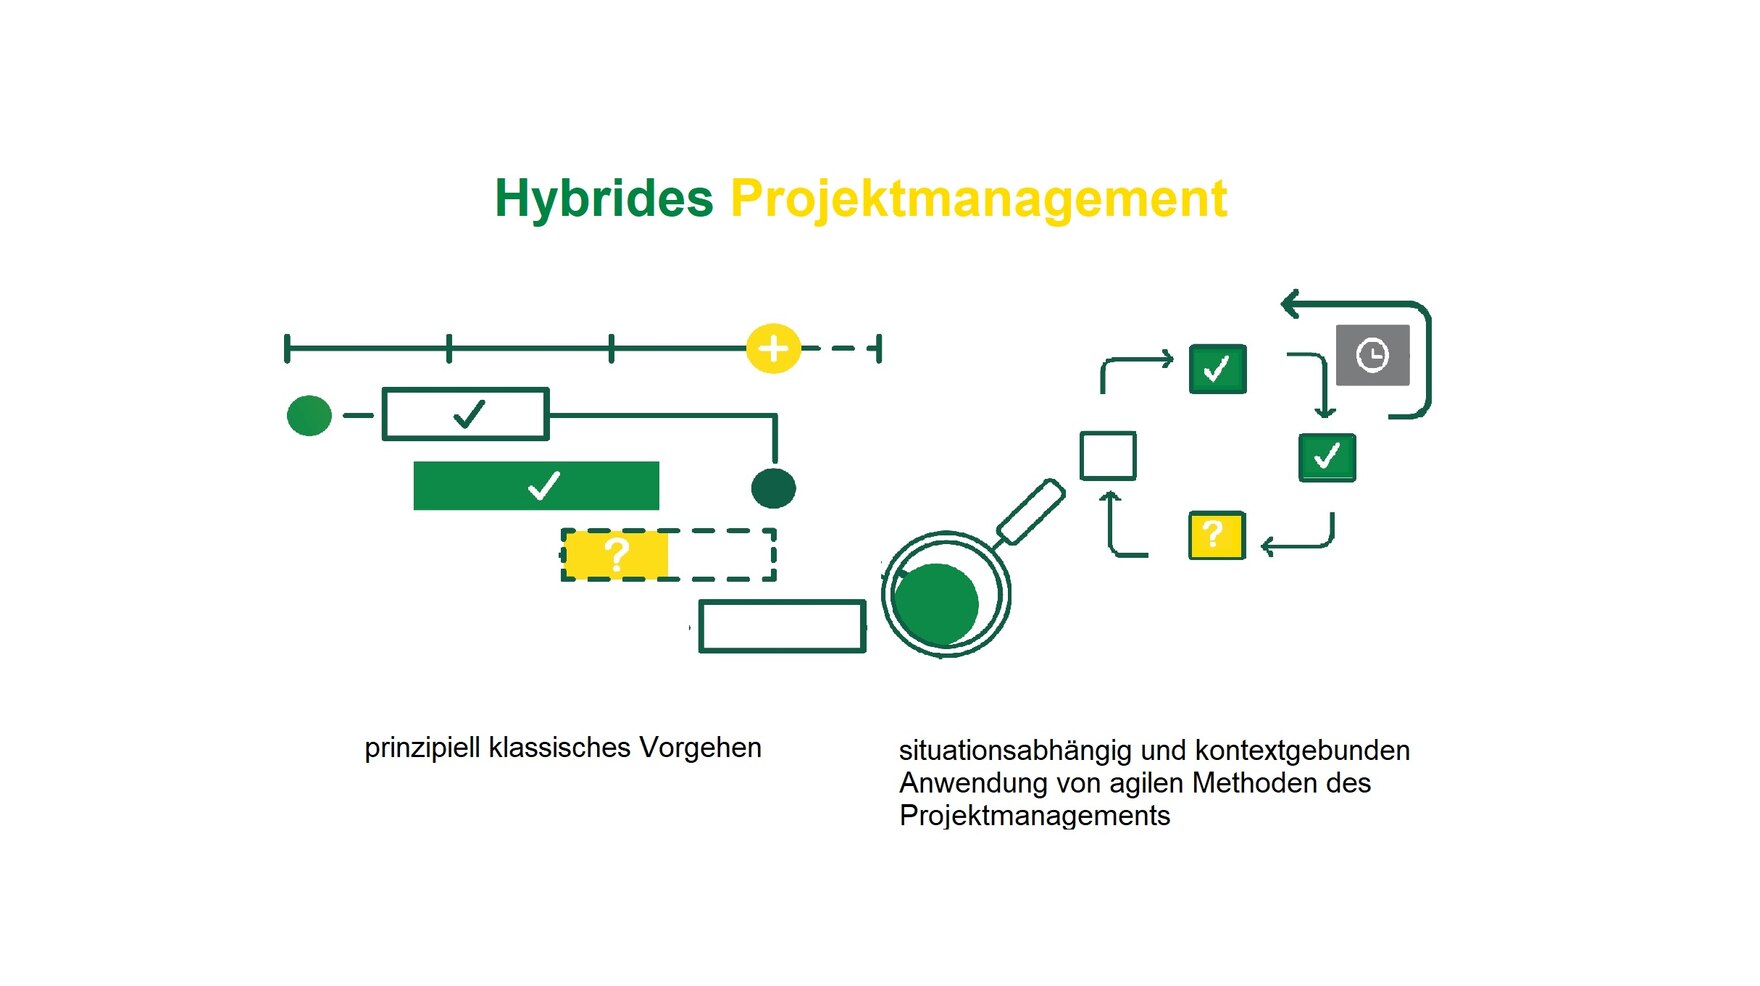 auf dem Bild wird visualisiert, dass sich das hybride Projektmanagement aus dem Klassischen und agilen Projektmanagement zusammensetzt, 